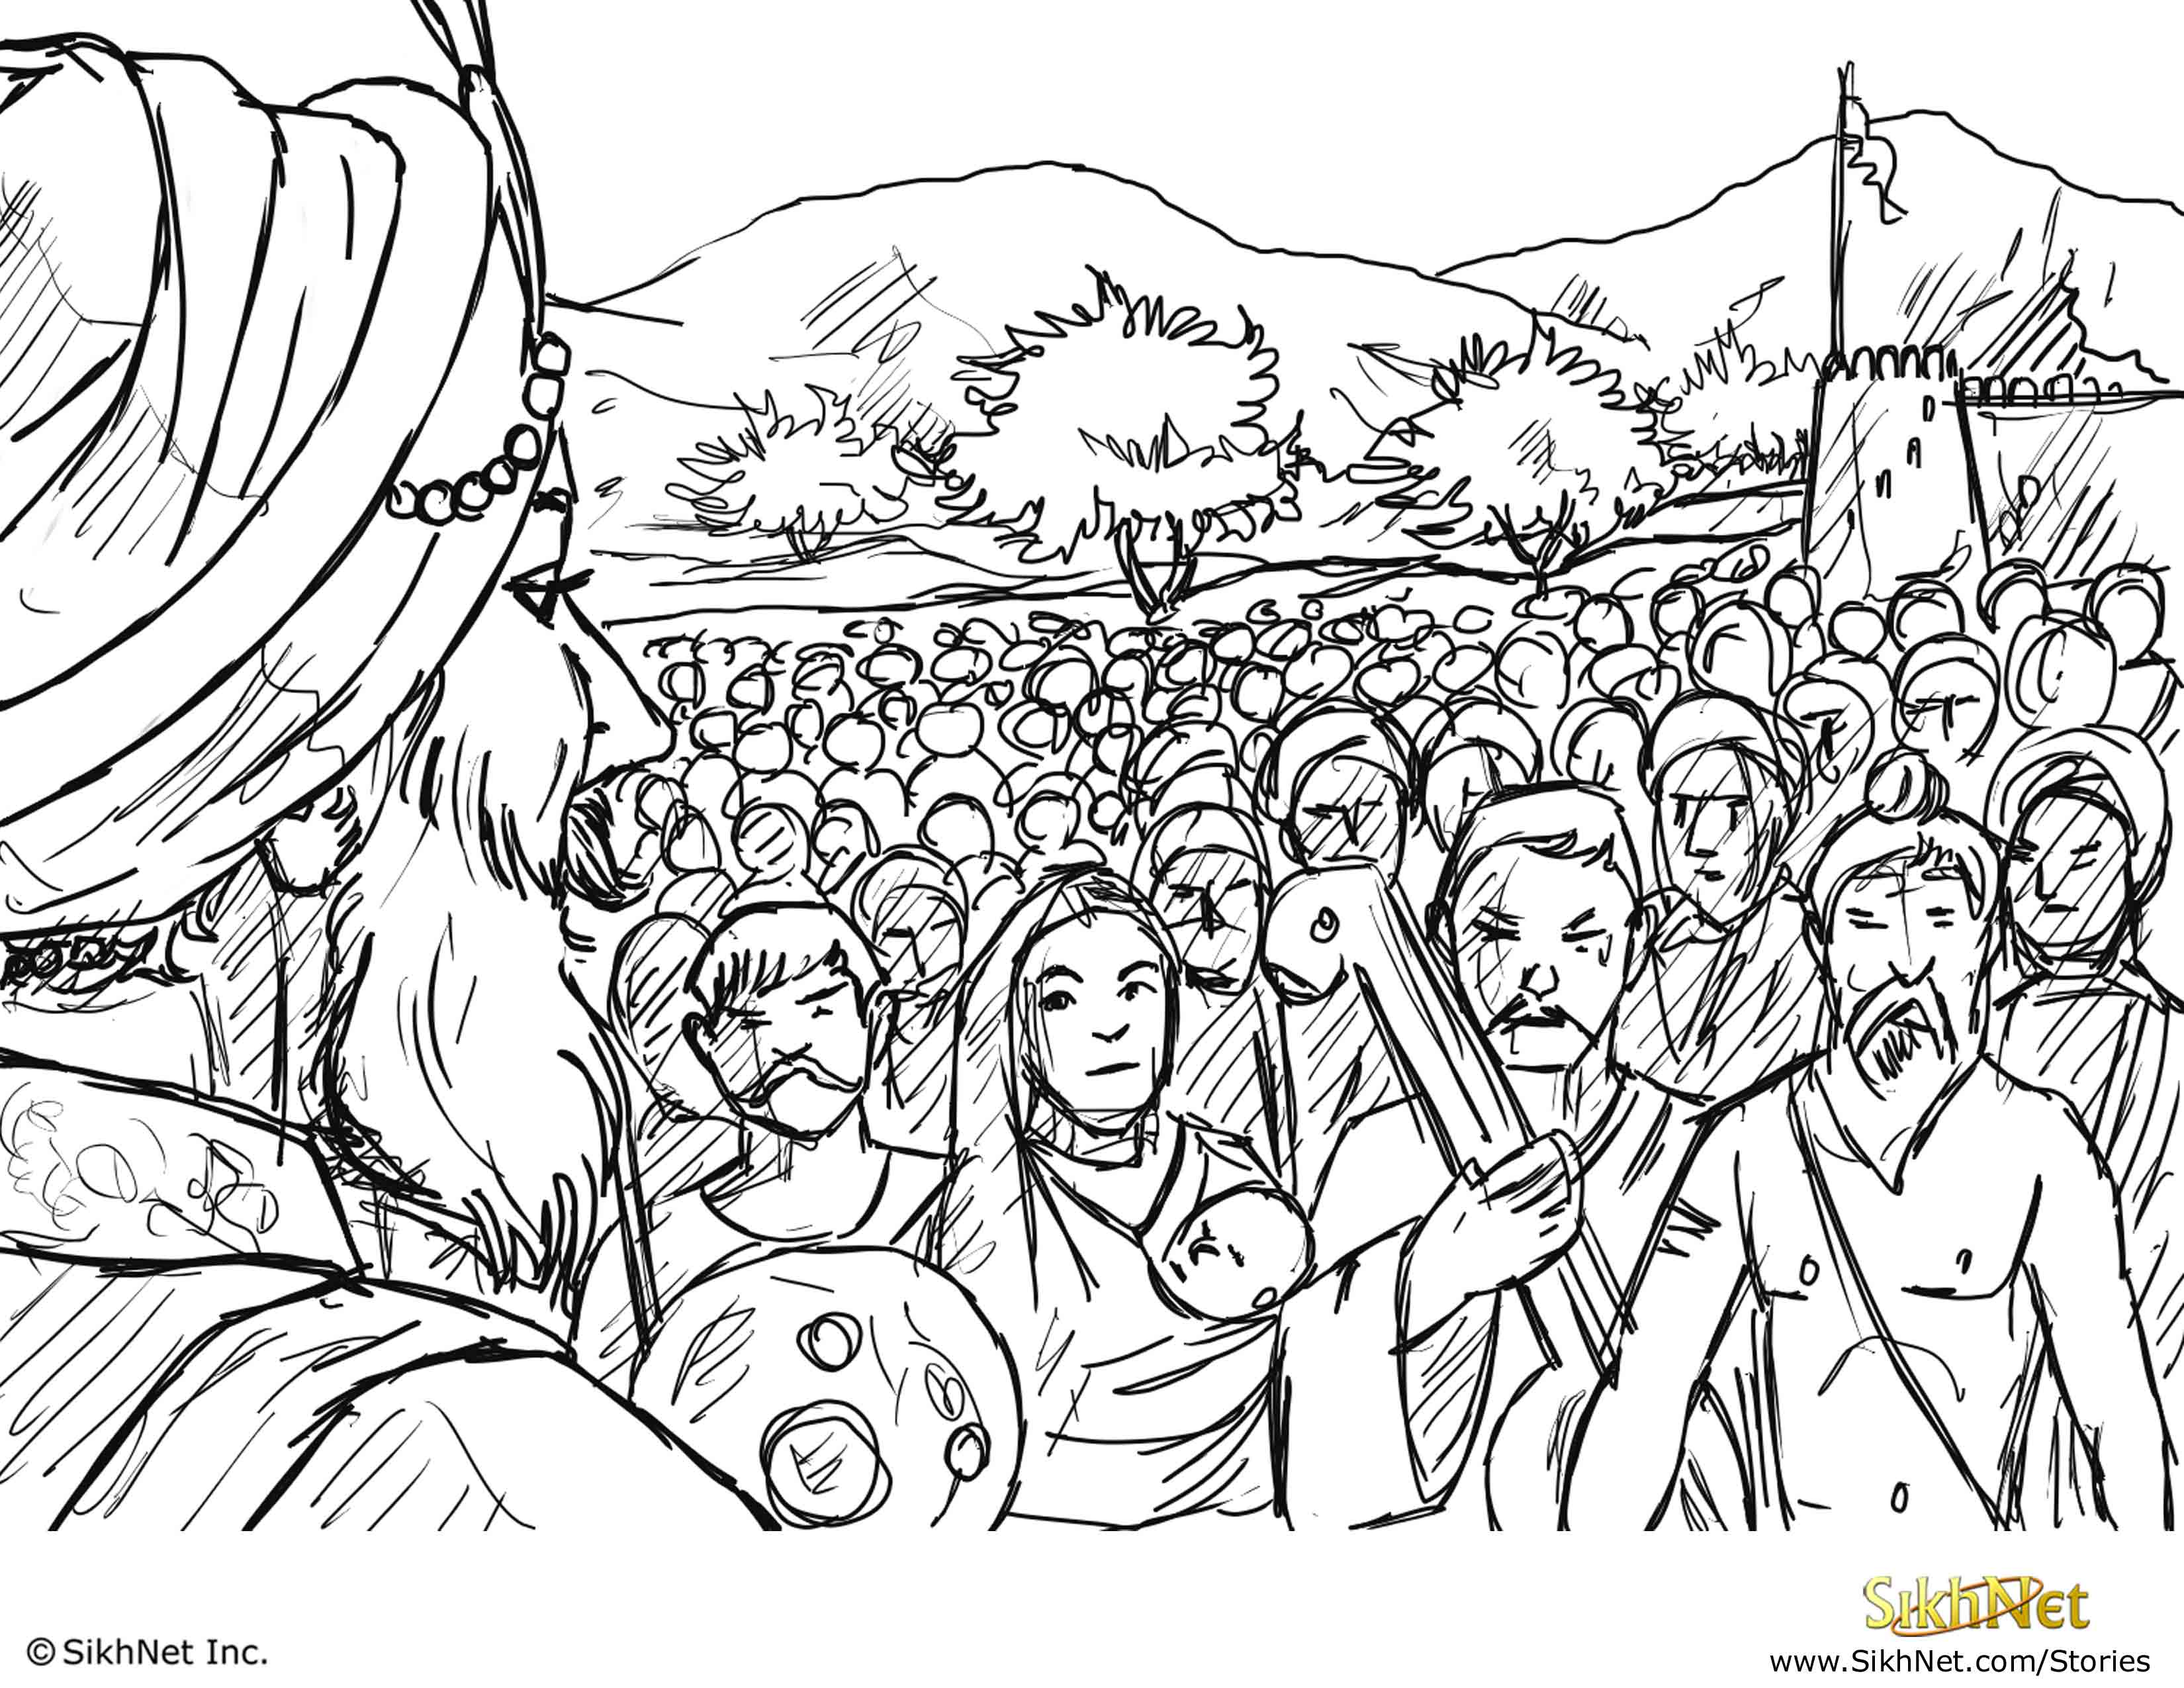 Vaisakhi Birth Of Khalsa | SikhNet